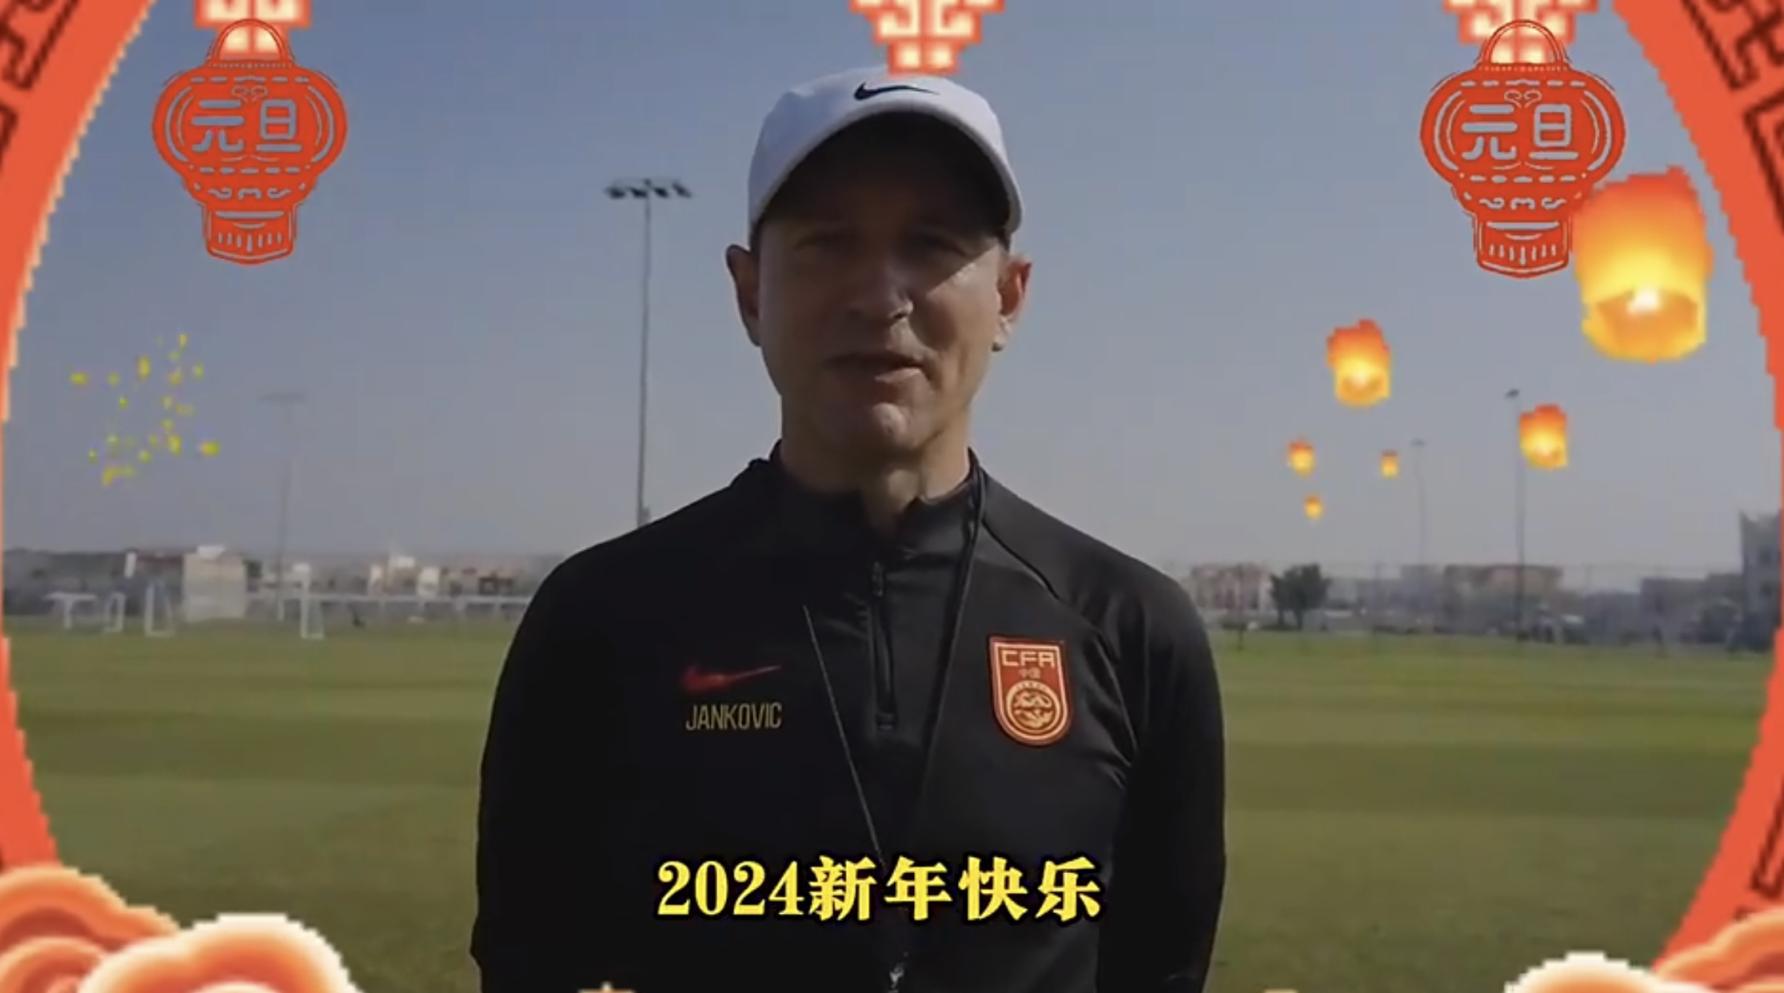 因为爱足球 永远正青春 中国男足送上新年祝福(1)